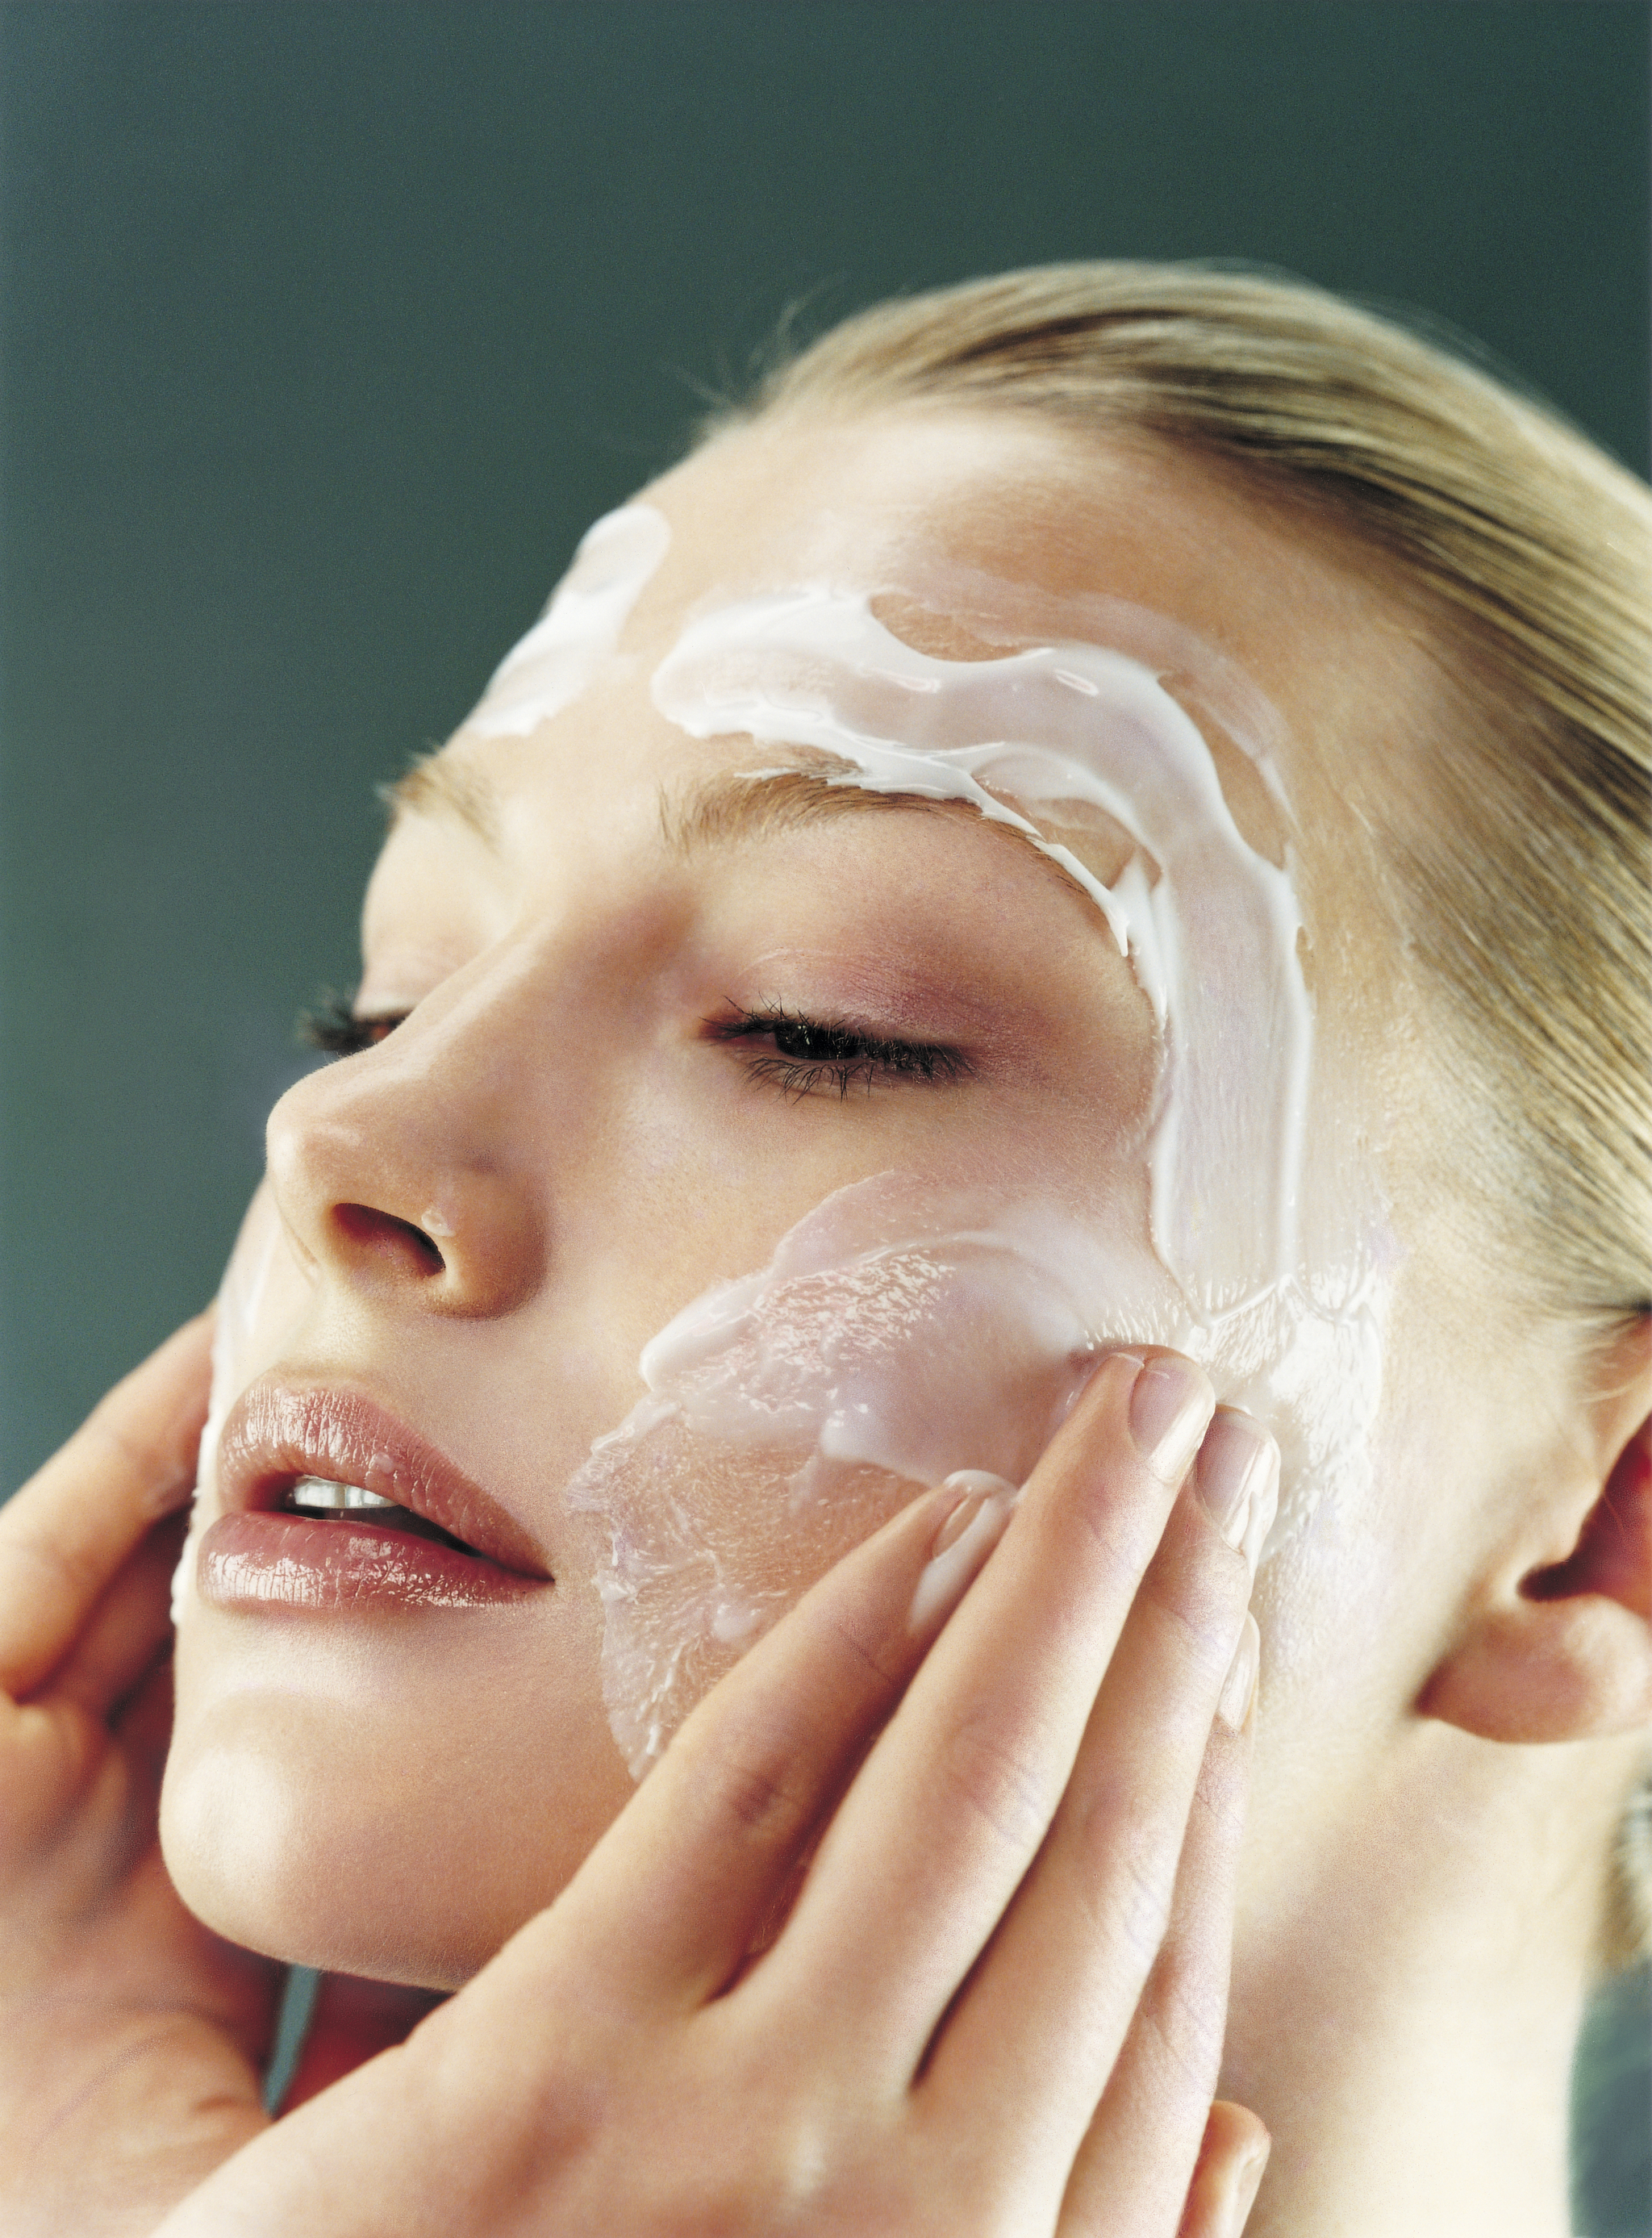 Aplica tu crema facial desde el centro hacia fuera, masajeando de forma suave y durante unos minutos para que los activos penetren más.